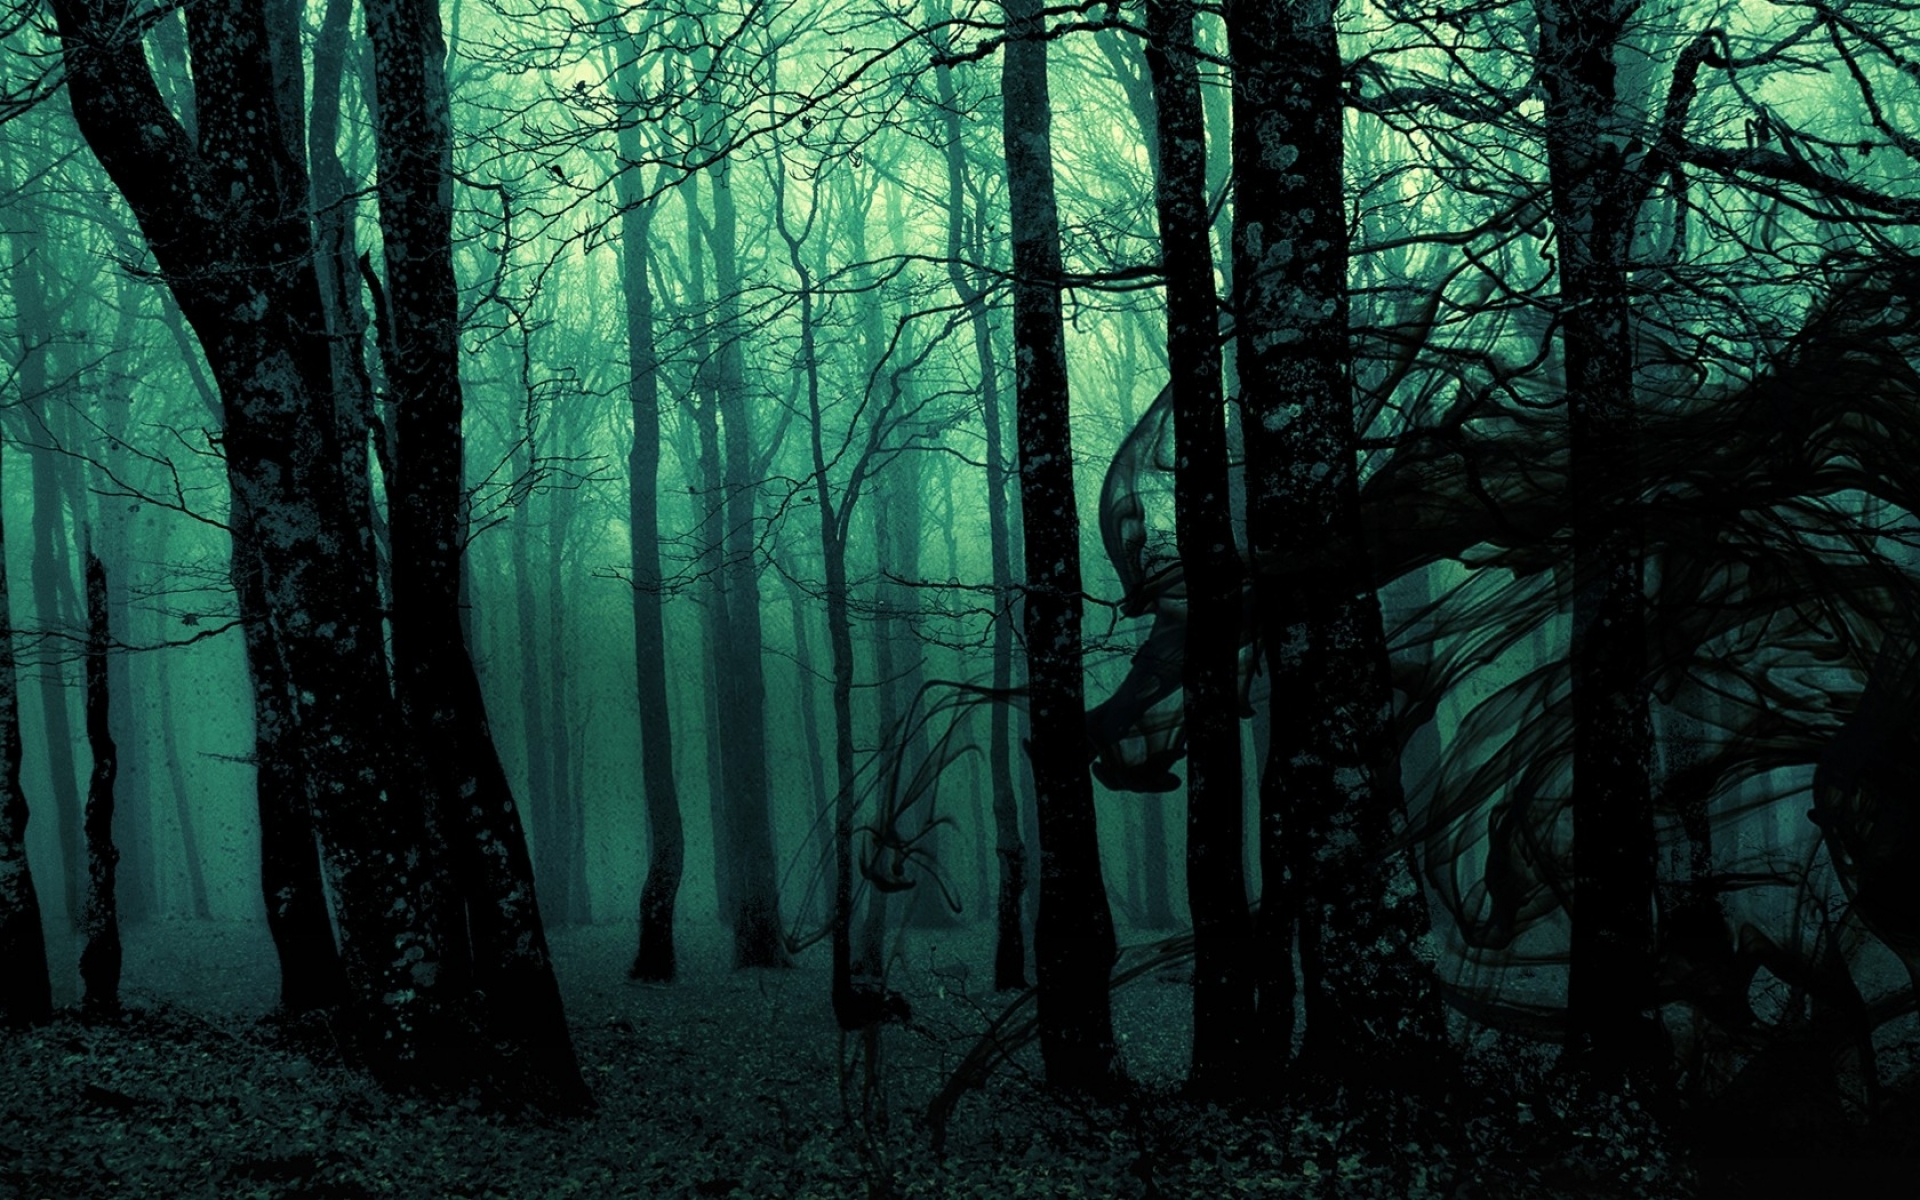 Bức tranh máy tính về khu rừng đen chỉ đơn giản là một điều tuyệt vời. Những bức hình này thực sự làm cho dàn máy của bạn trở nên đẹp mắt hơn và tạo cảm hứng trong công việc hằng ngày.